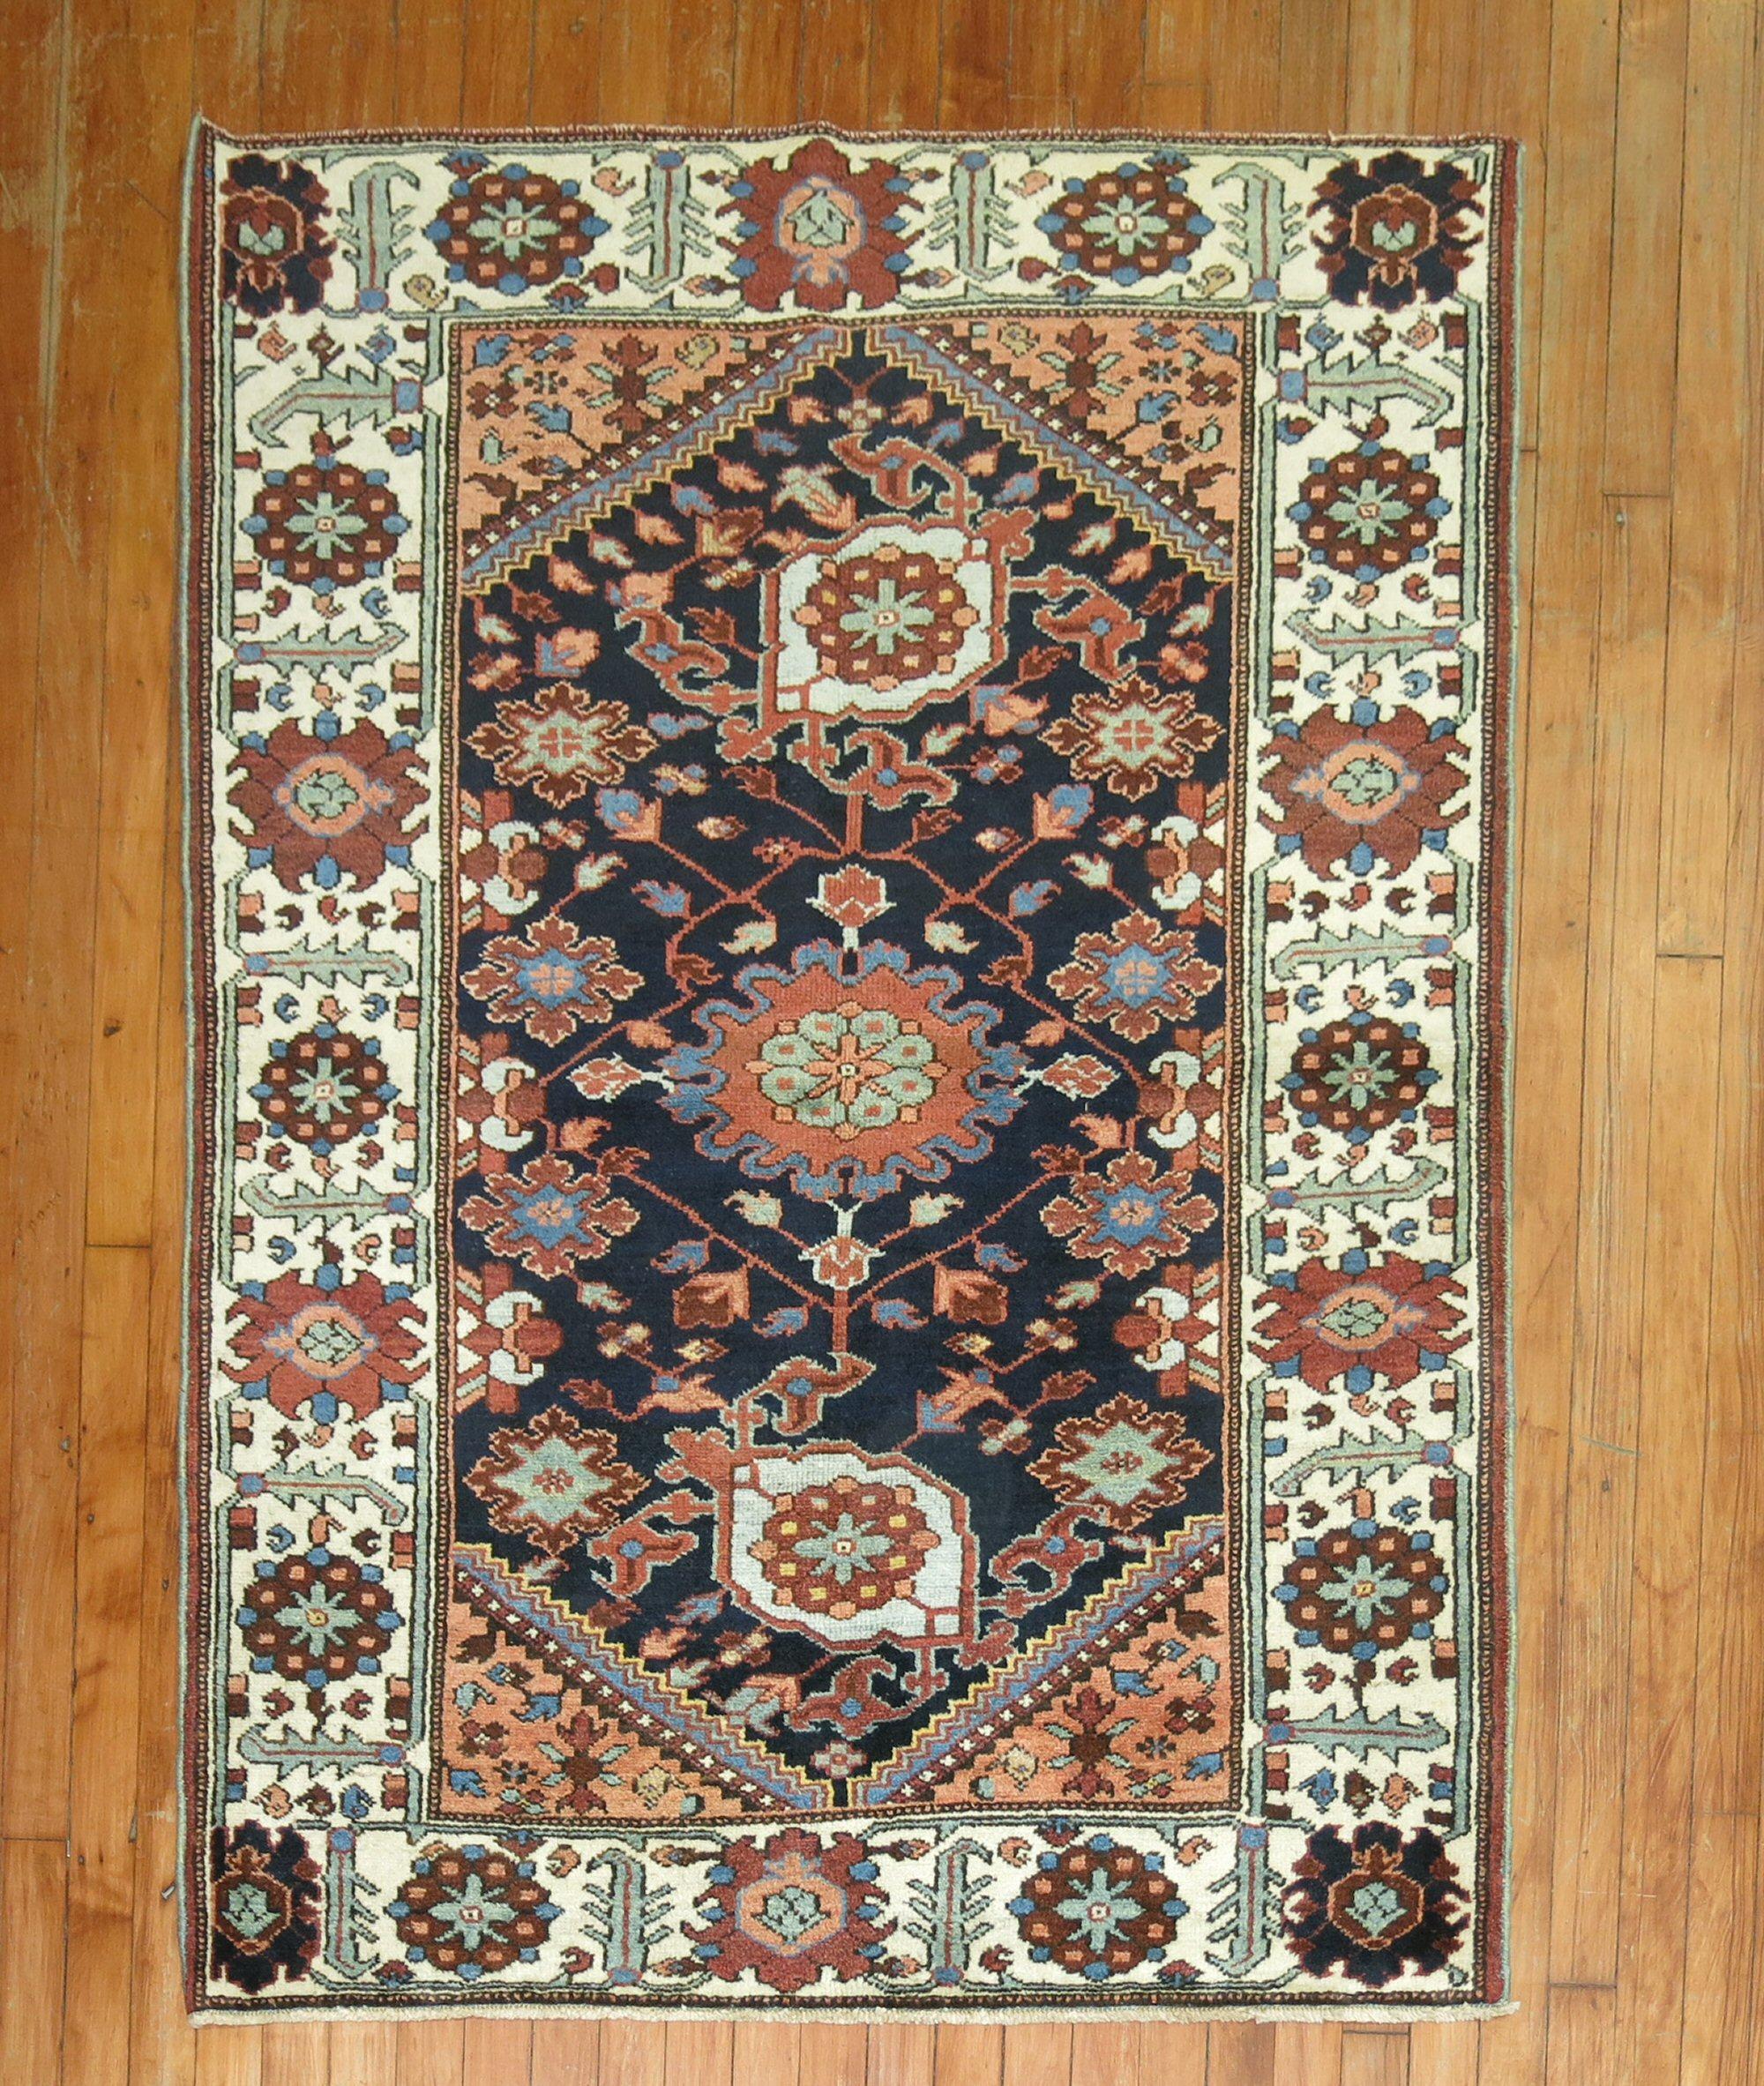 Persischer Bakhtiar-Teppich aus den 1930er Jahren mit großflächigem Allover-Muster auf marineblauem Feld

Maße: 3'9'' x 5'.